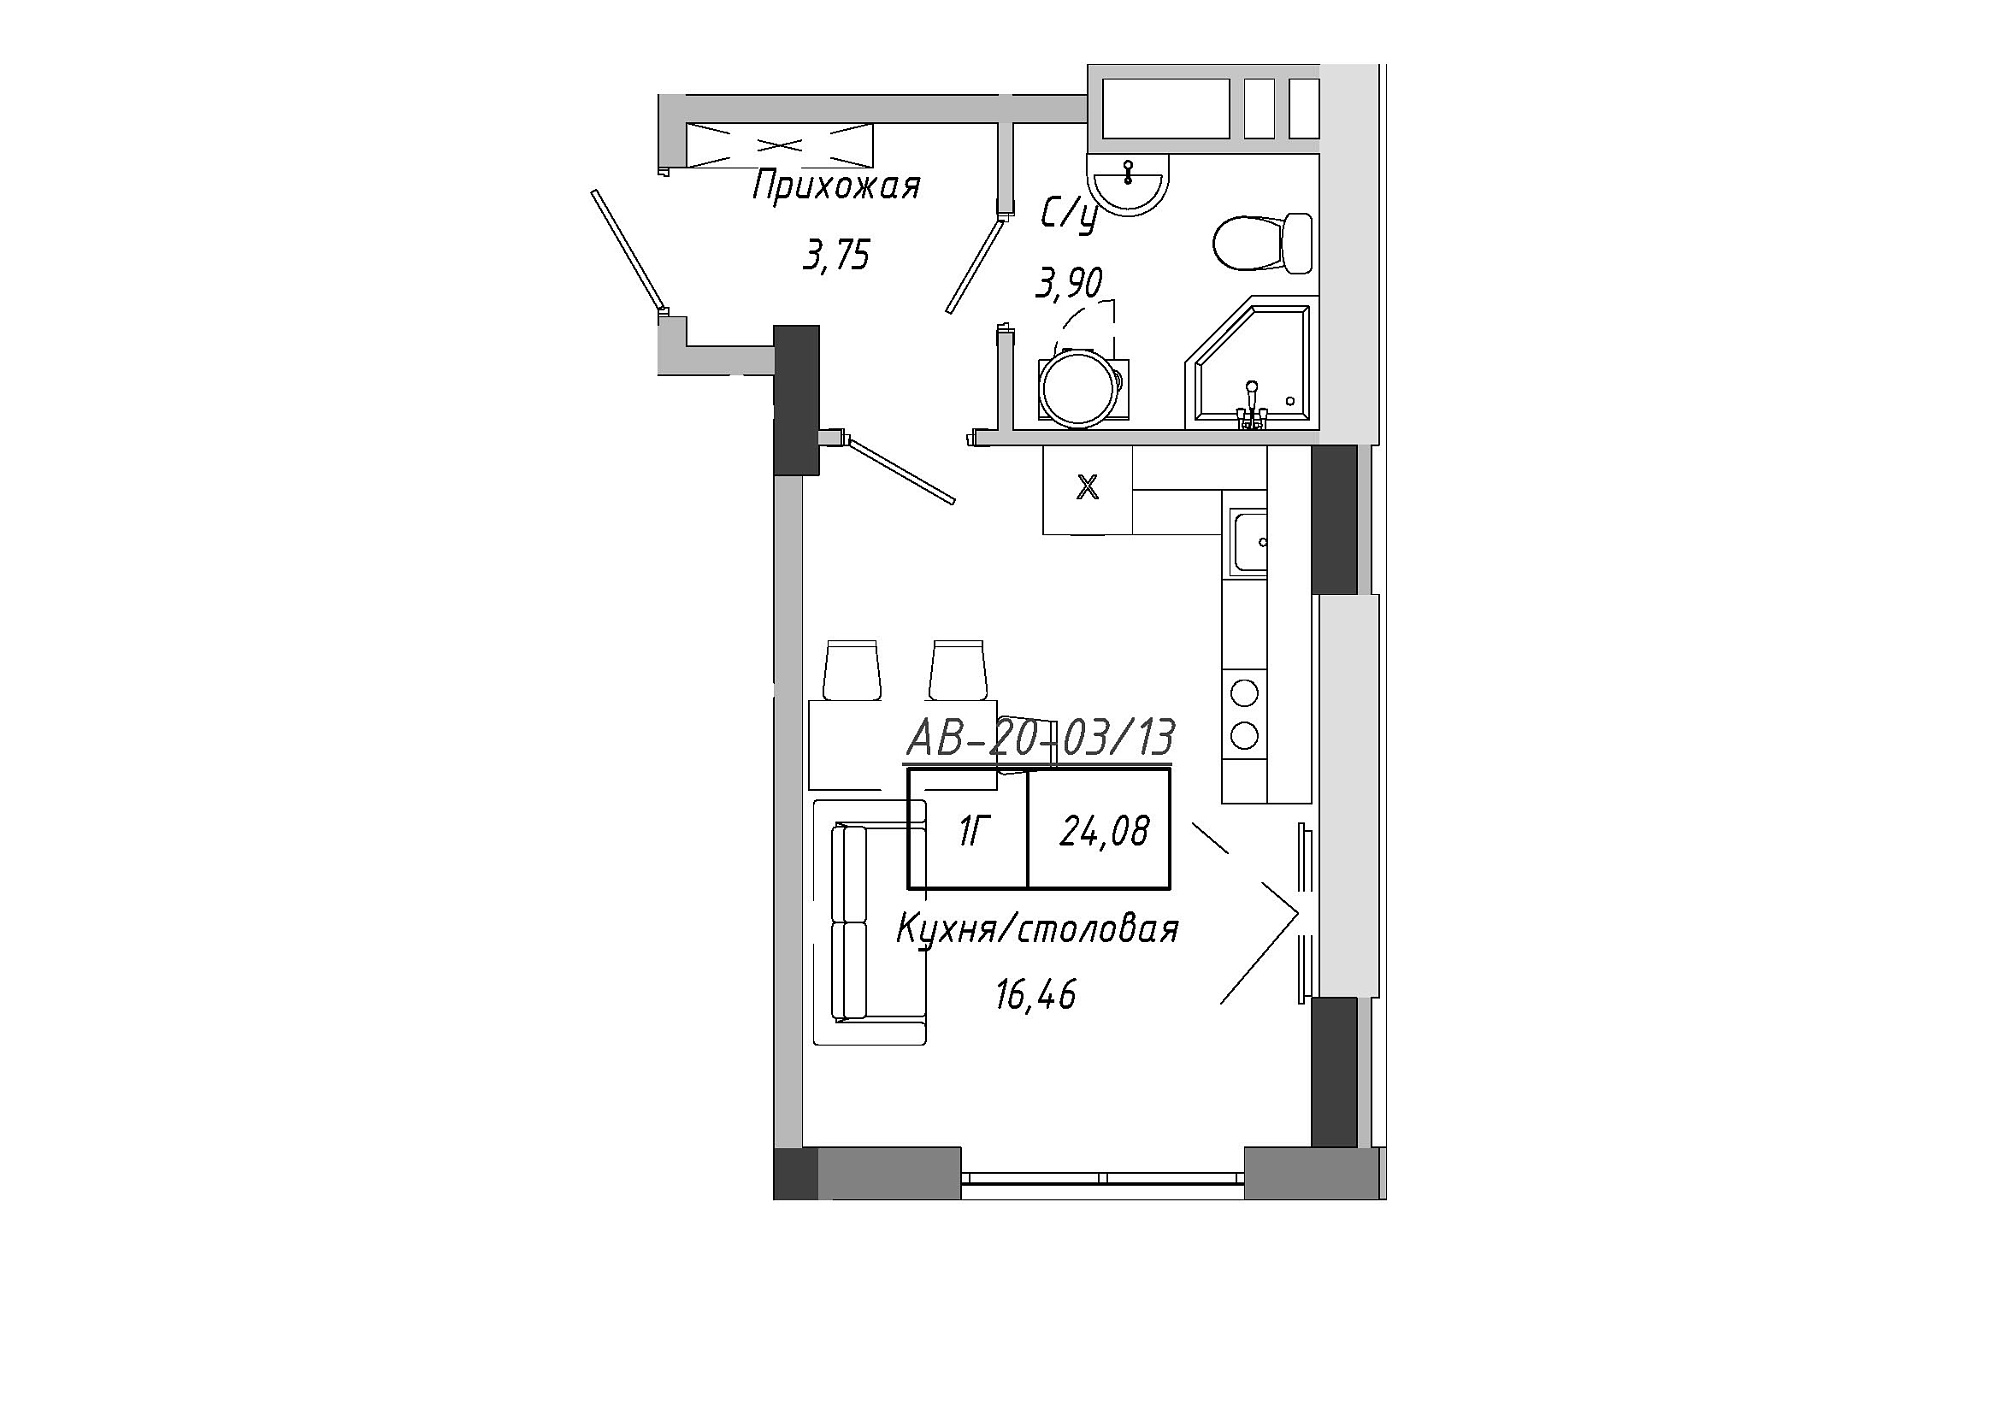 Планування Smart-квартира площею 24.08м2, AB-20-03/00013.